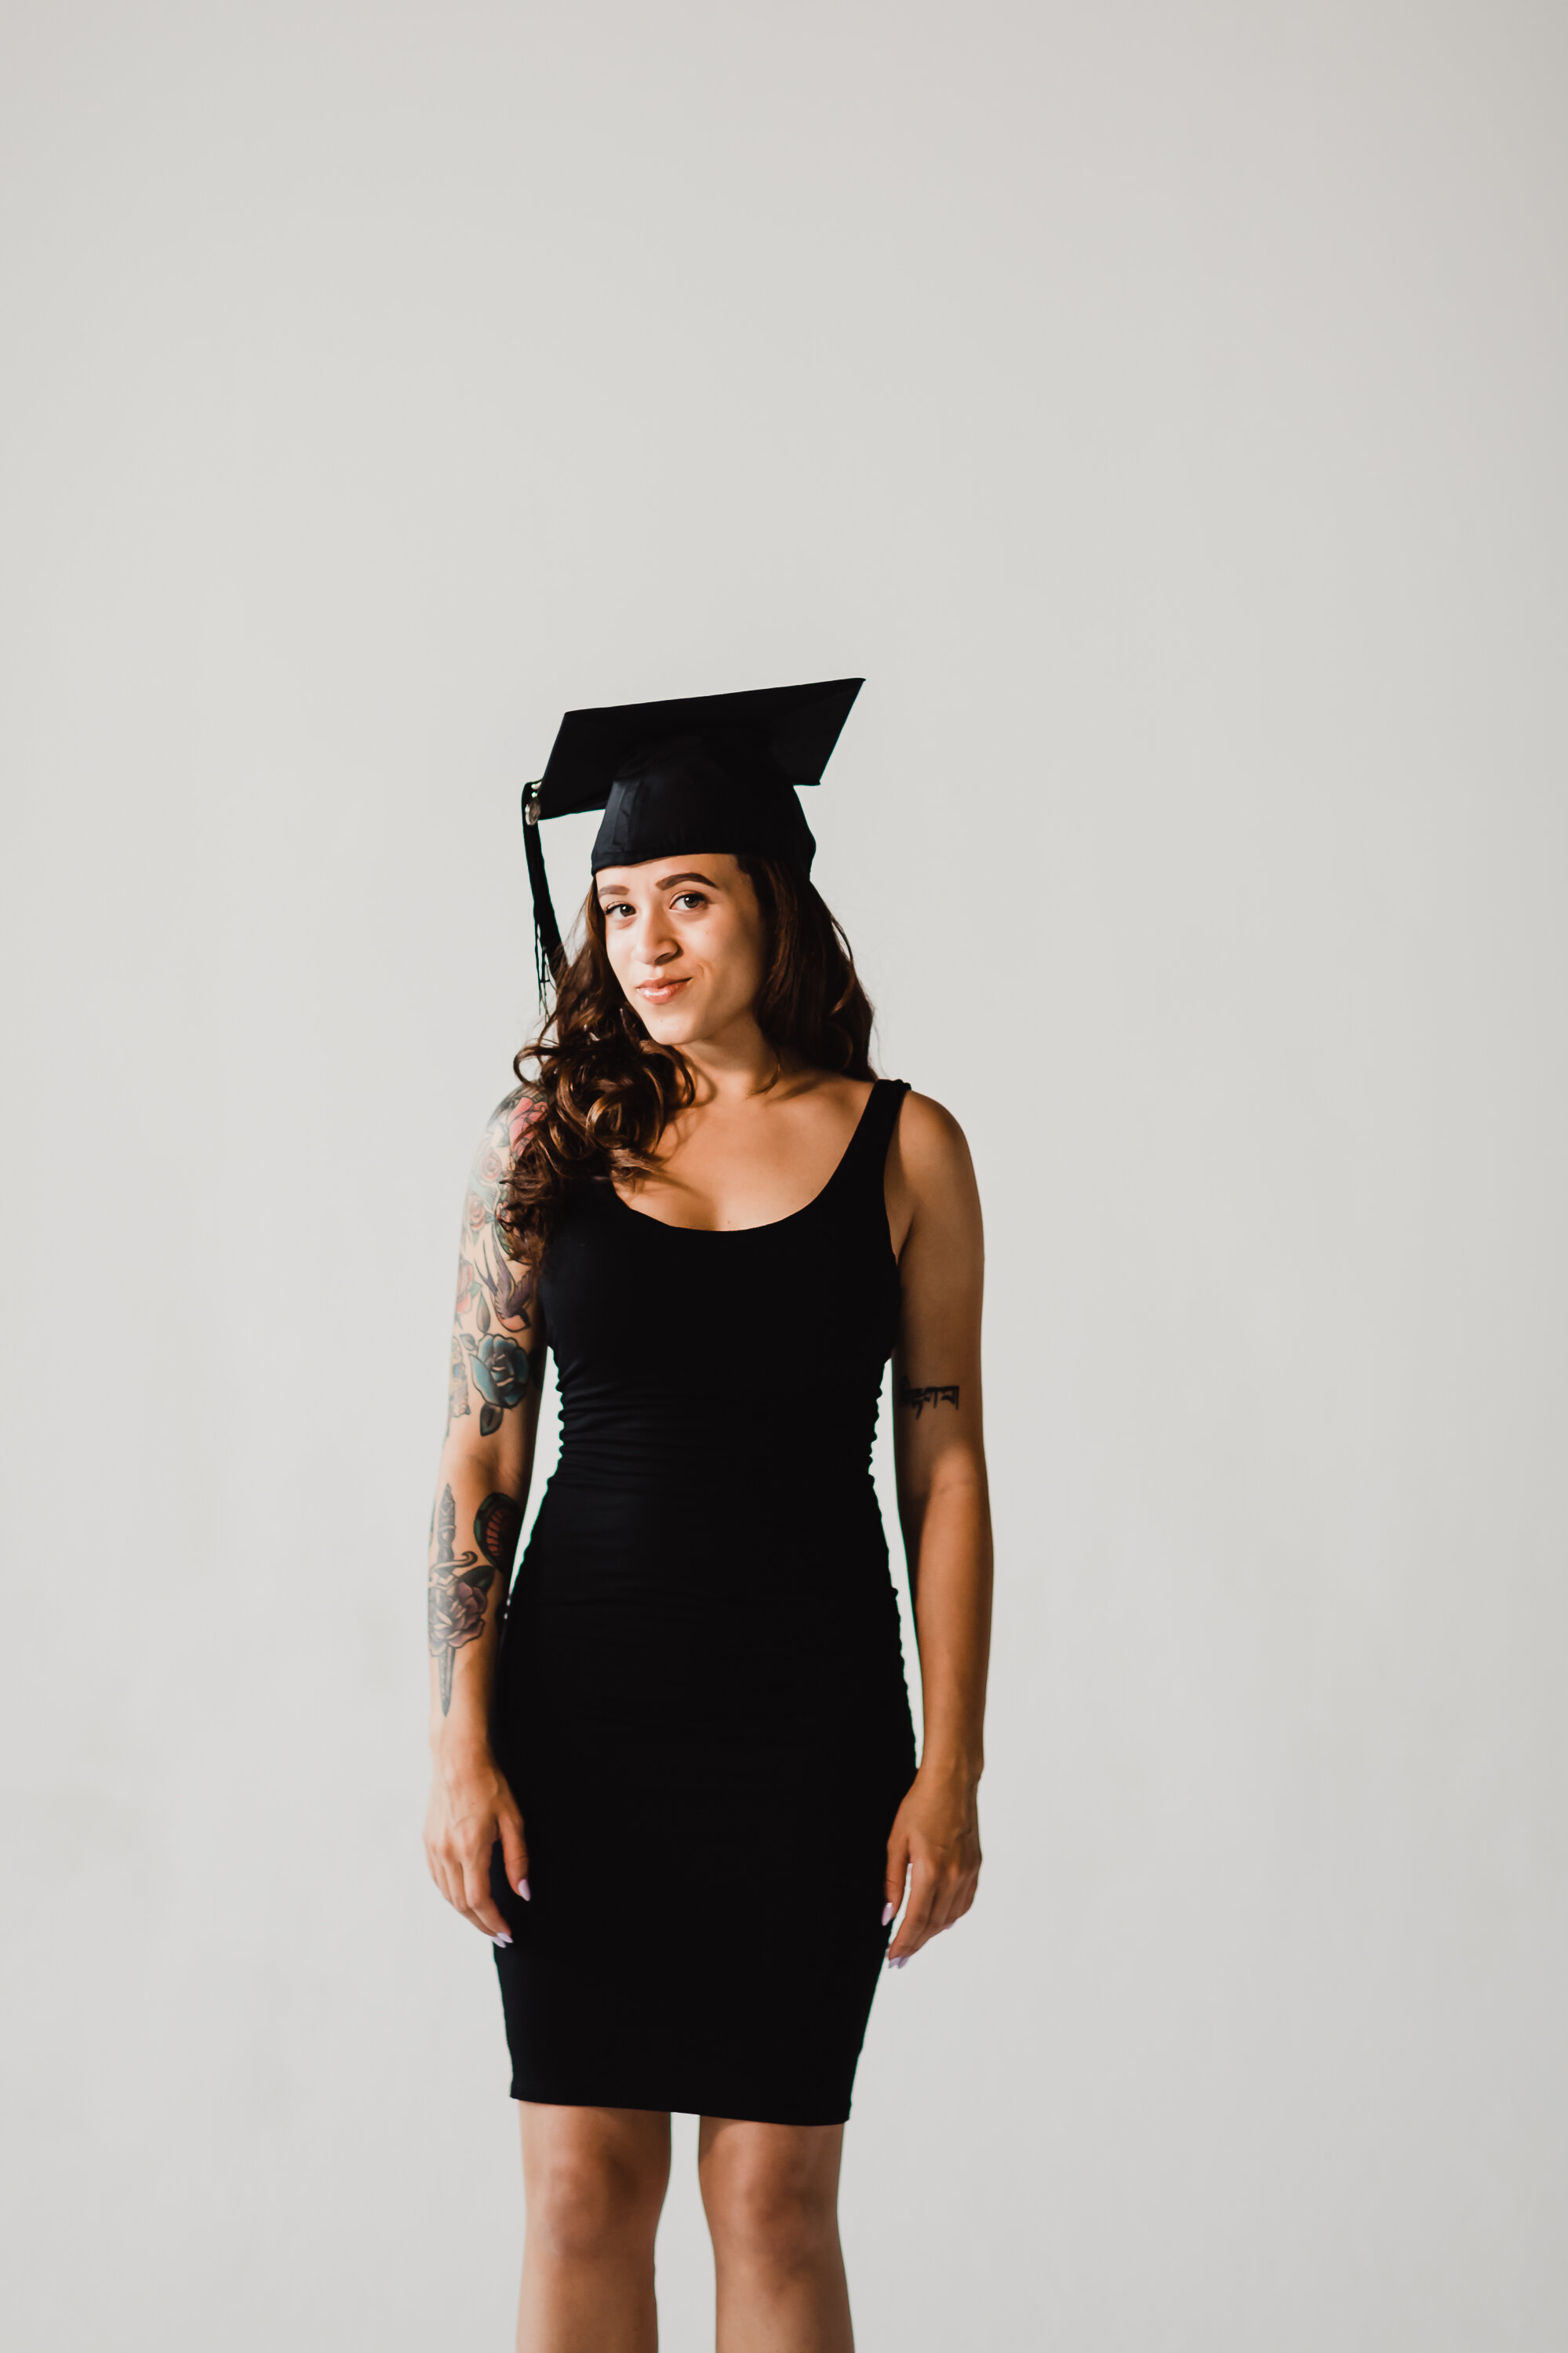 Gianna Keiko Atlanta Lifestyle Photographer_graduation portrait-33.jpg